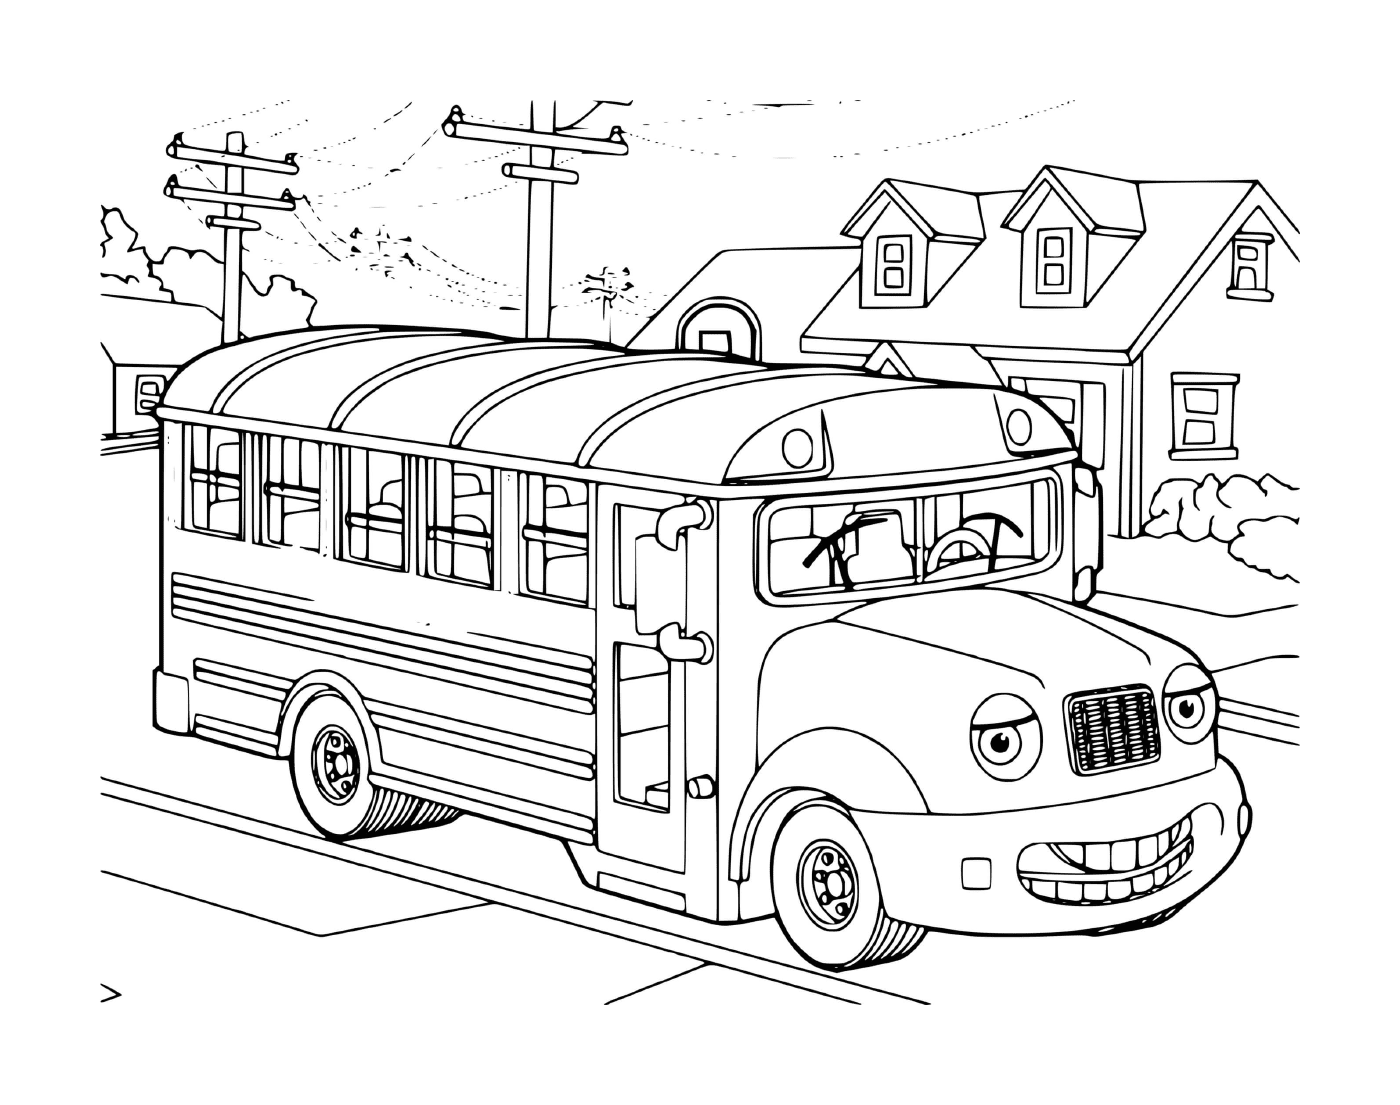   Un bus qui récupère les enfants chez eux 